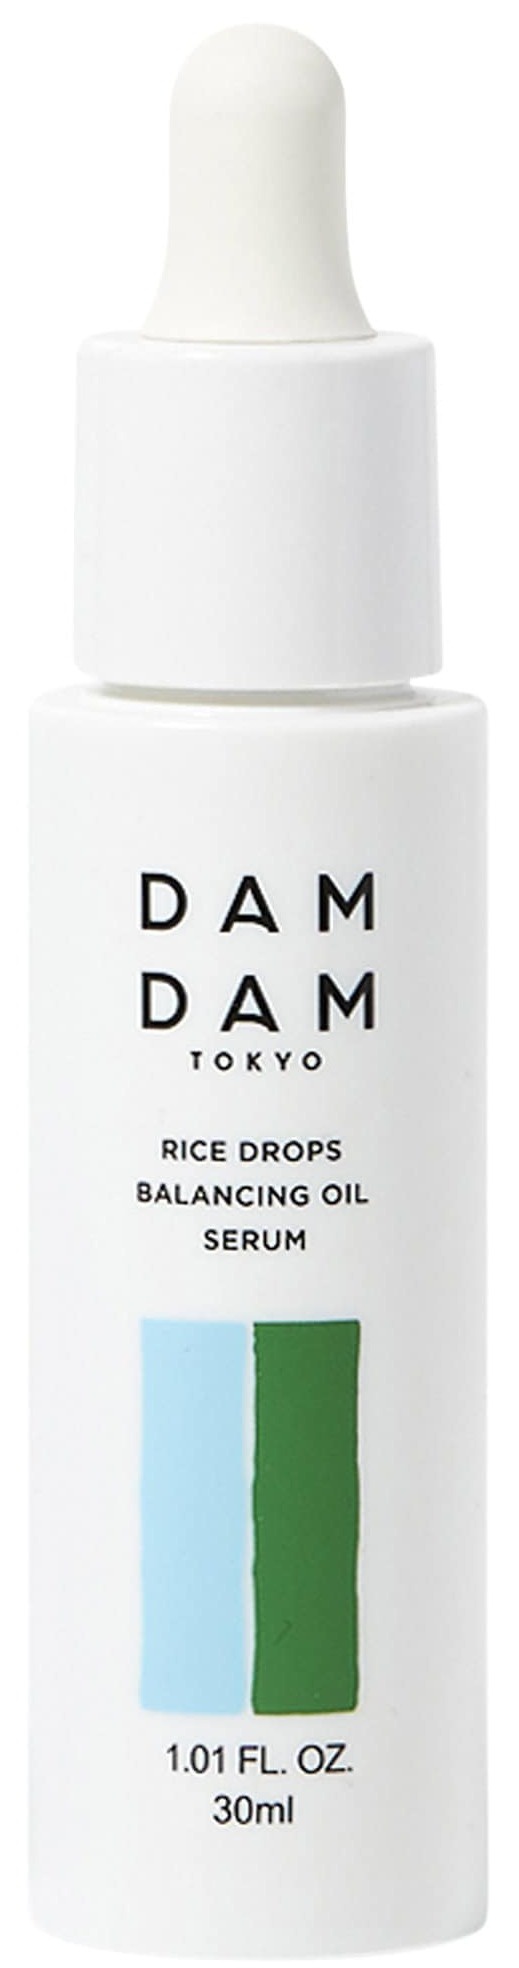 DAMDAM Rice Drops Face Oil Hydrating Serum